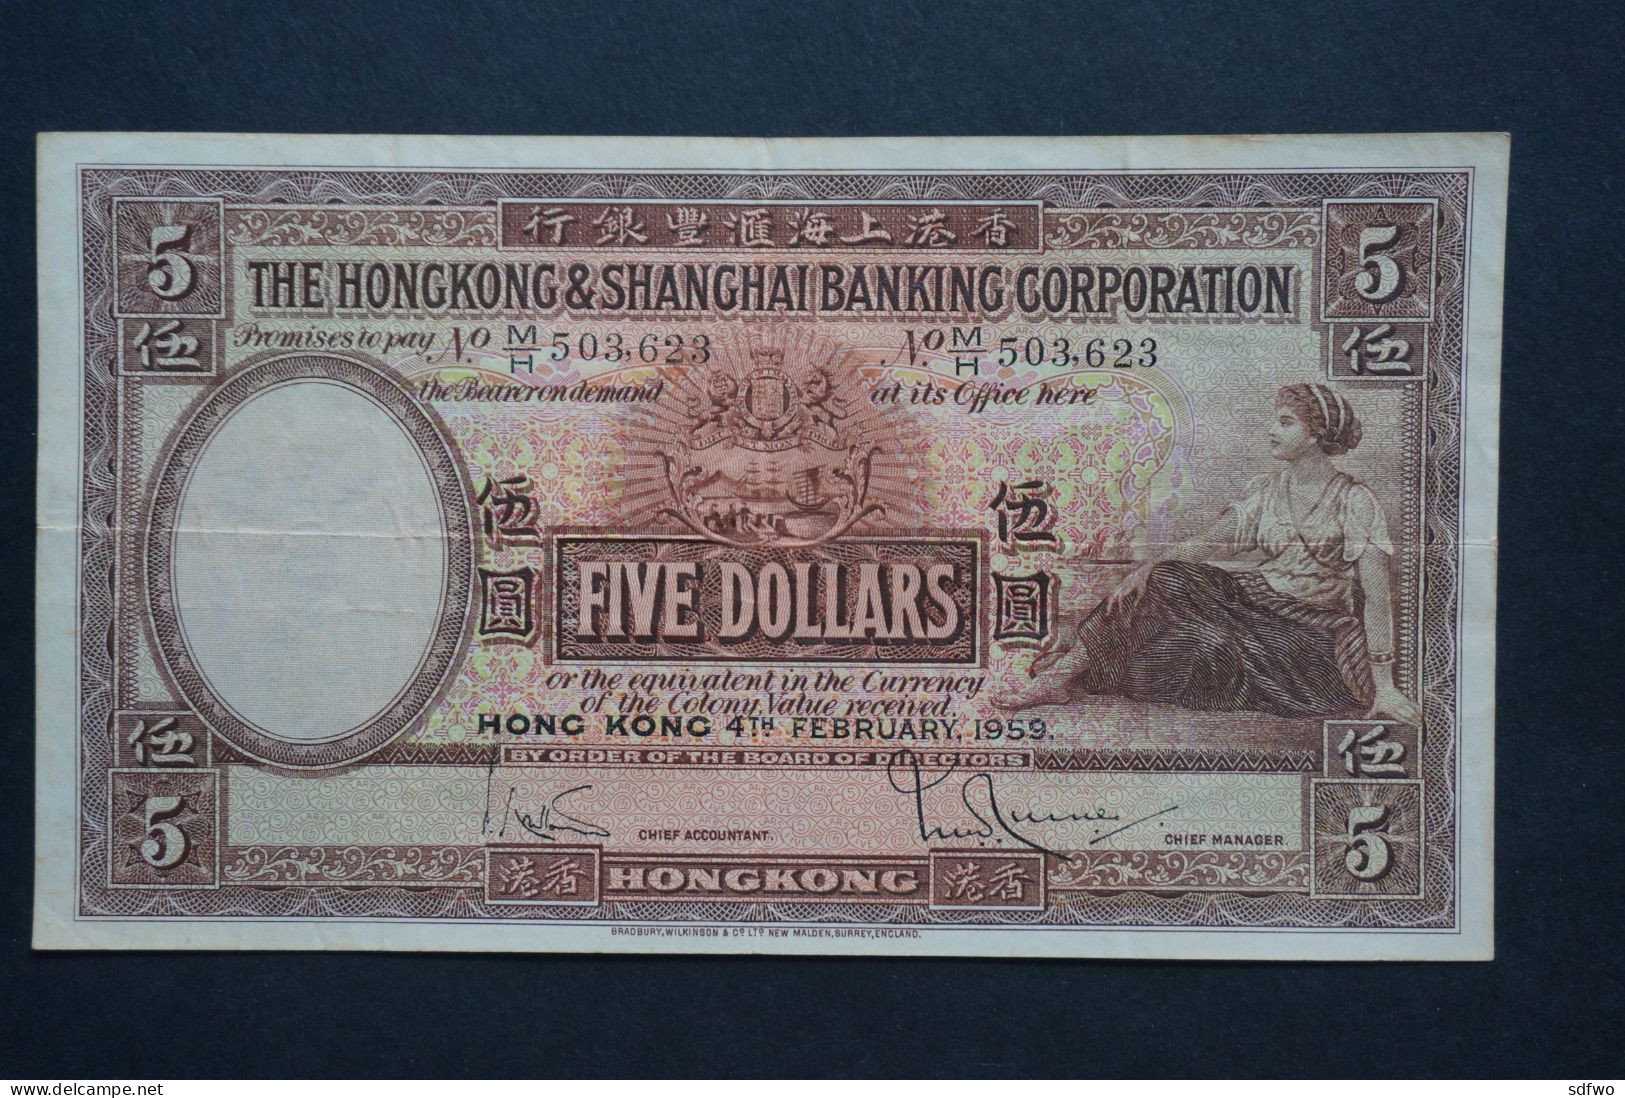 (Tv) 1959 HONG KONG OLD ISSUE - HSBC BANKNOTE 5 DOLLARS #M/H 503,623 - Hongkong